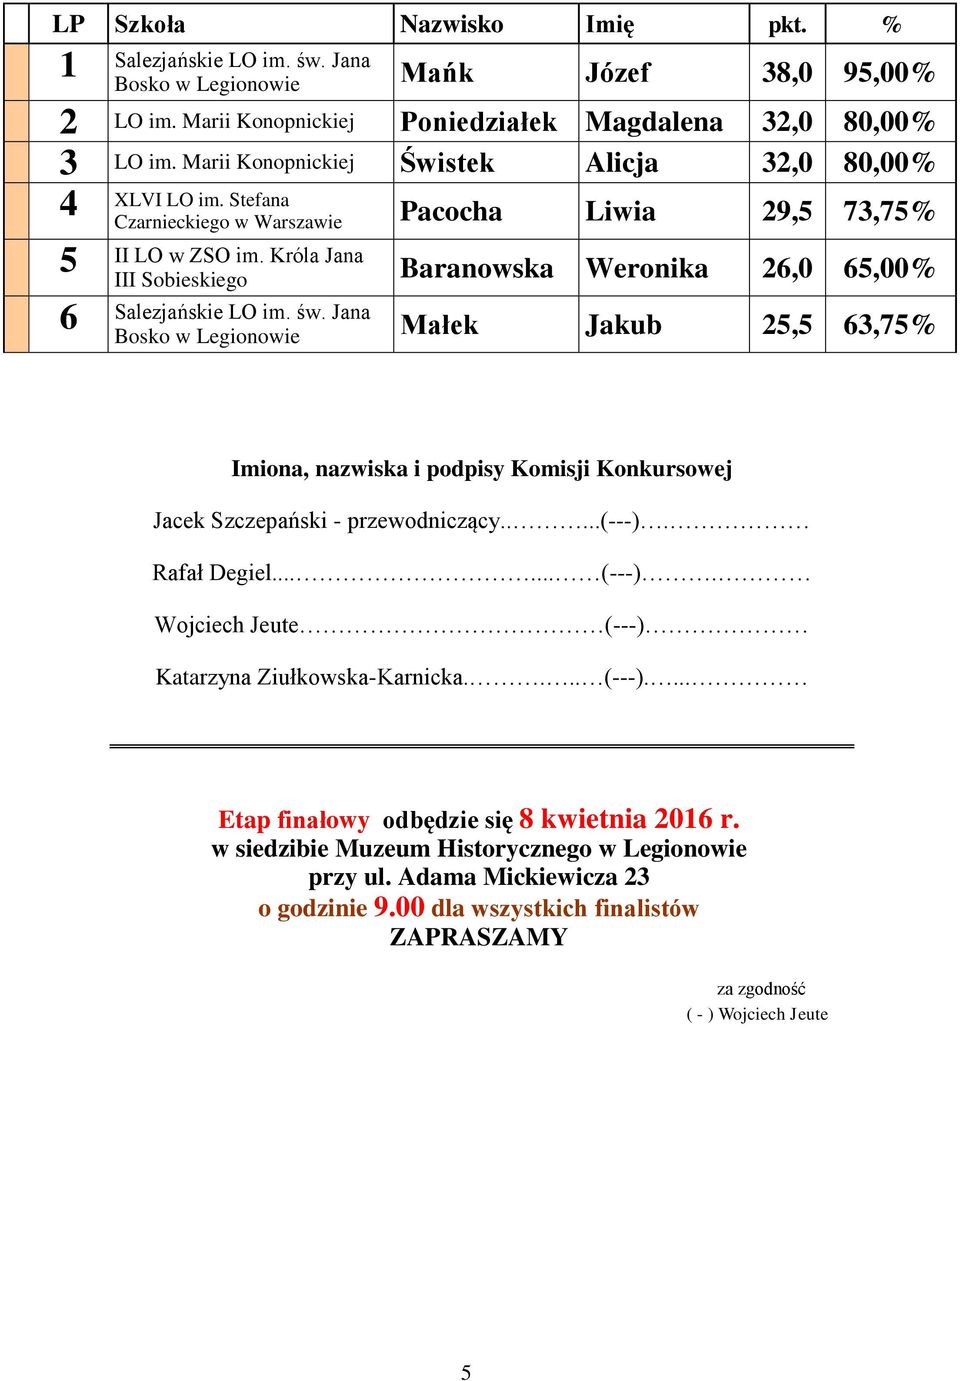 Króla Jana III Sobieskiego Baranowska Weronika,0,00% Bosko Małek Jakub,,% Imiona, nazwiska i podpisy Komisji Konkursowej Jacek Szczepański - przewodniczący.